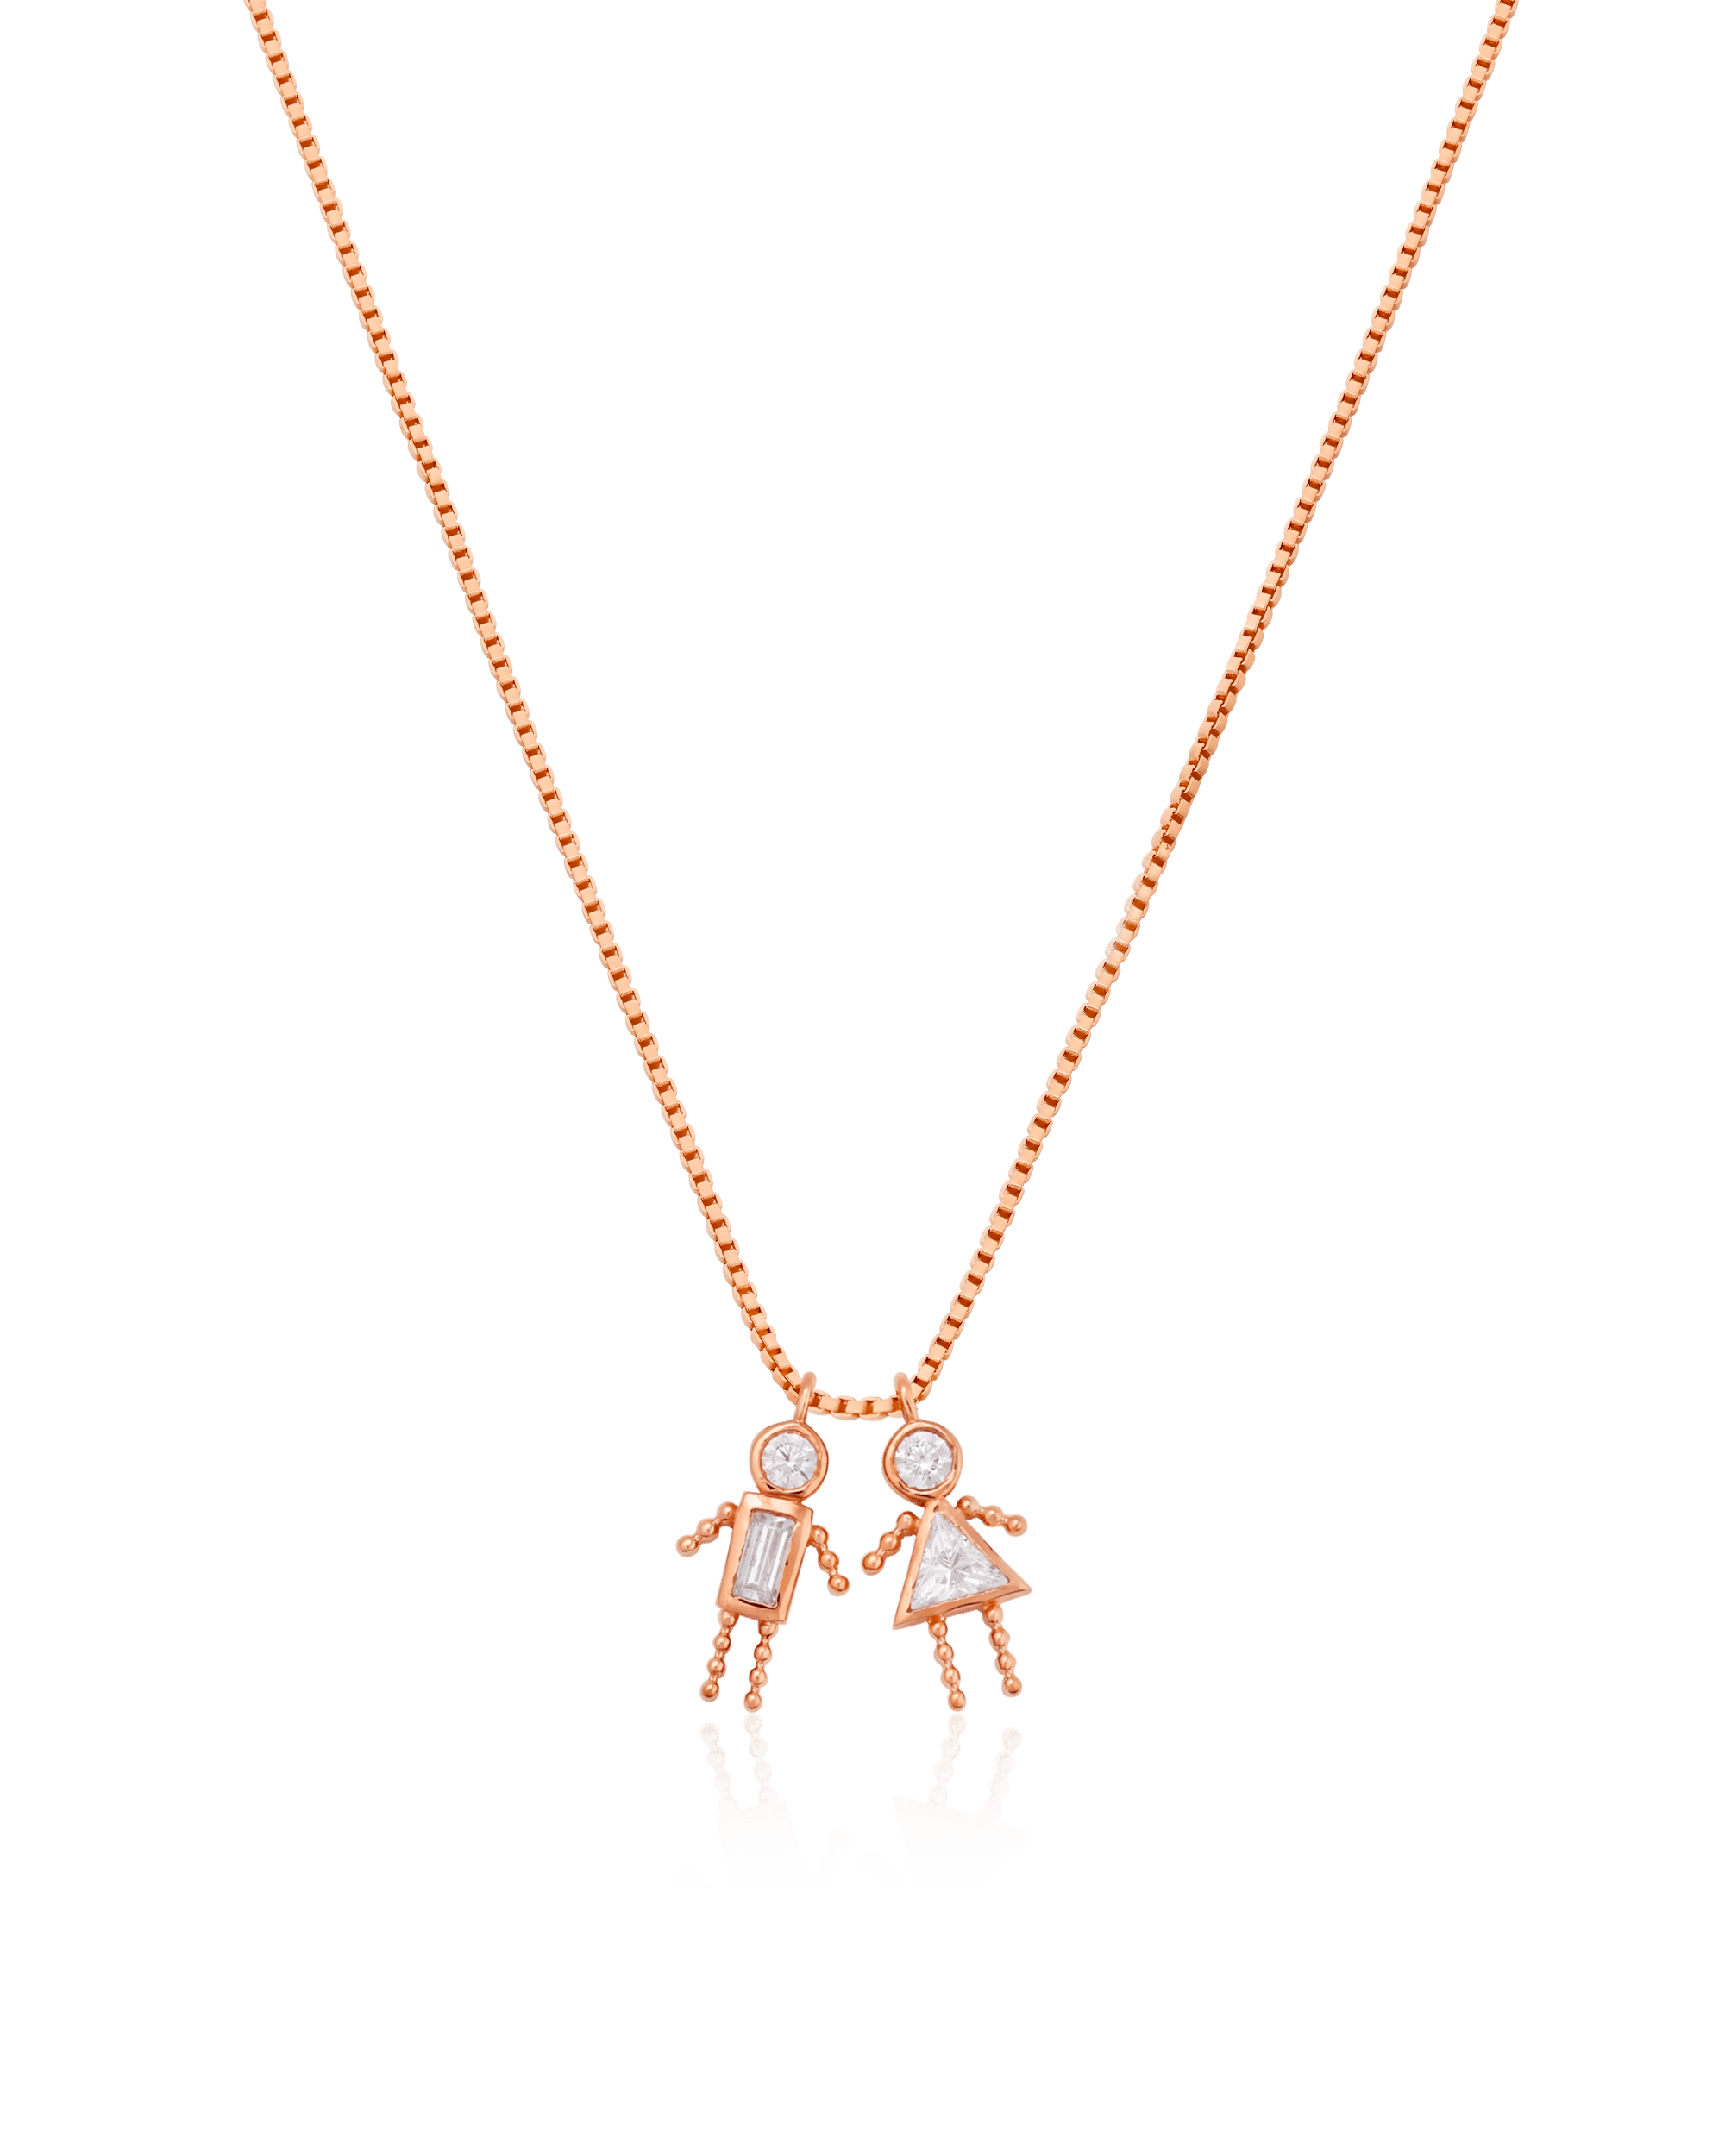 Mini Me Necklace - 18K Gold Vermeil Necklaces magal-dev 